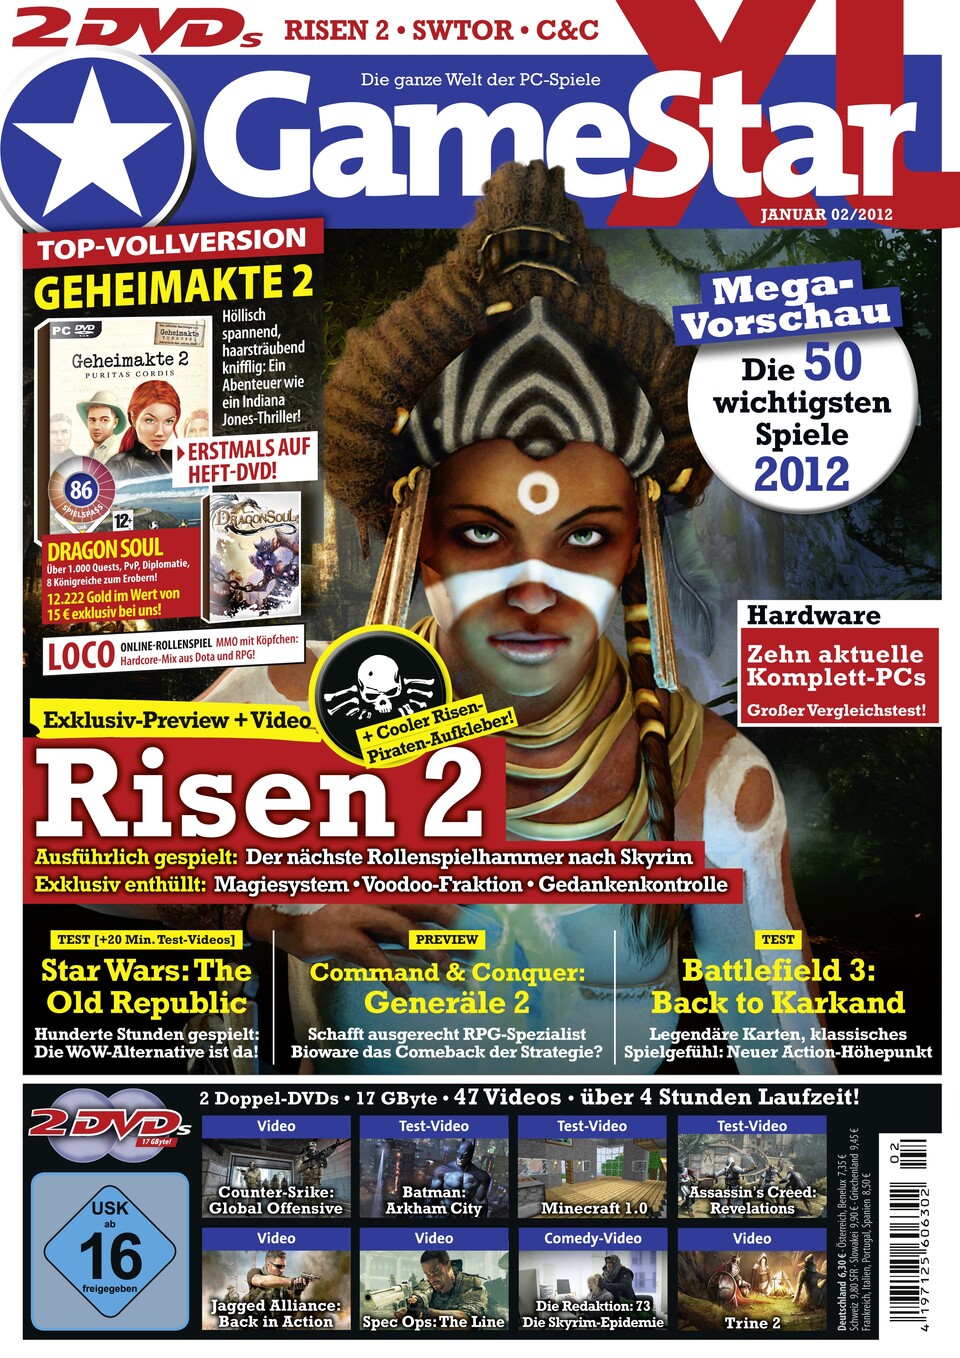 Die neue GameStar-Ausgabe 02/2012 ab 28. Dezember am Kiosk.